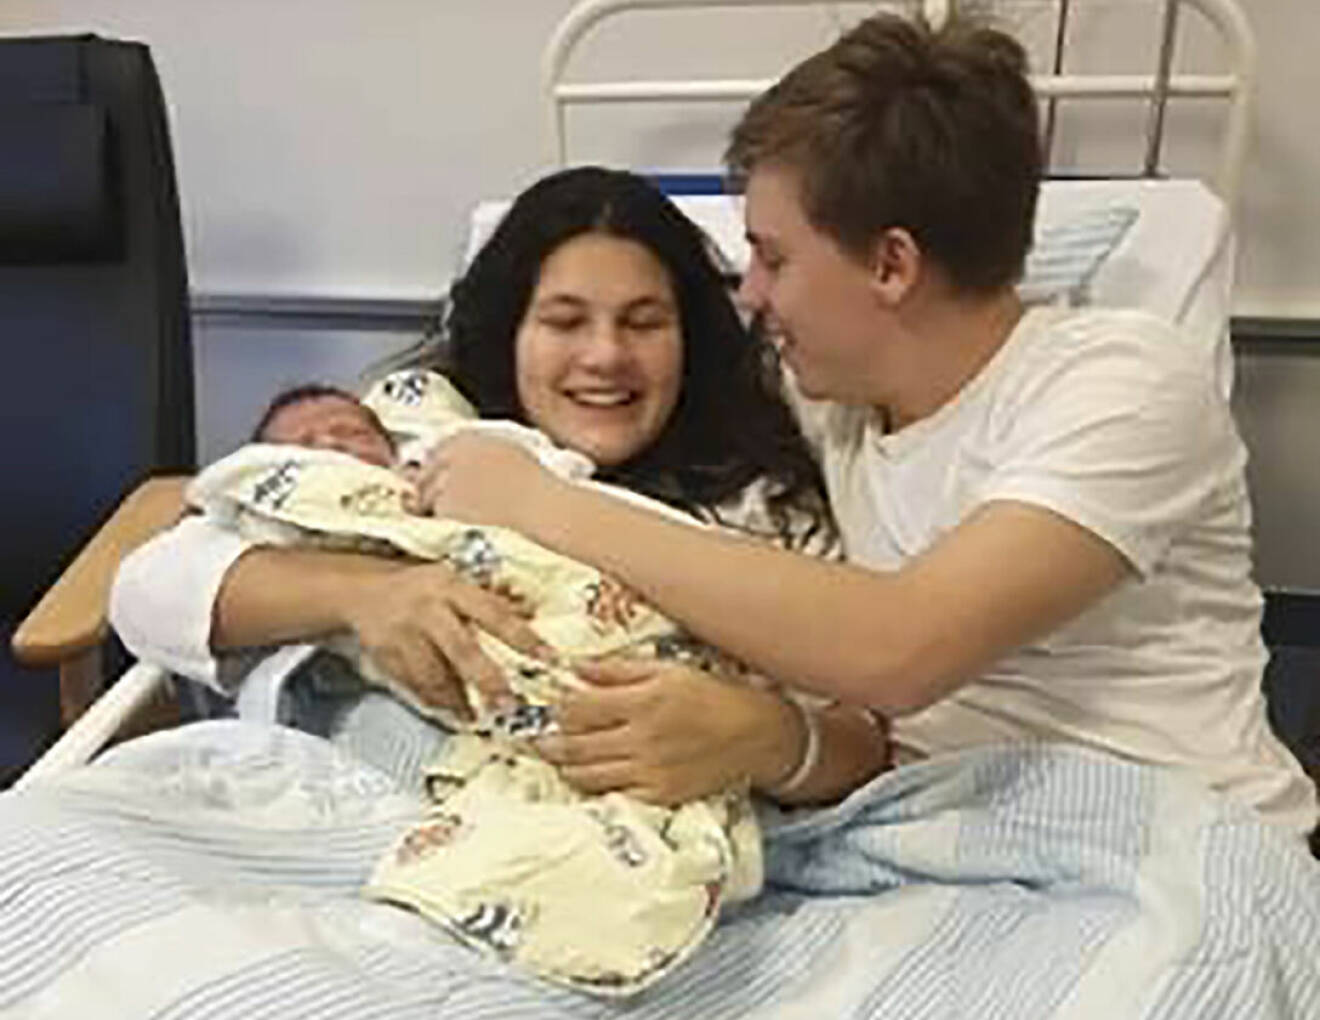 Ett ungt par som just fått sitt första barn.